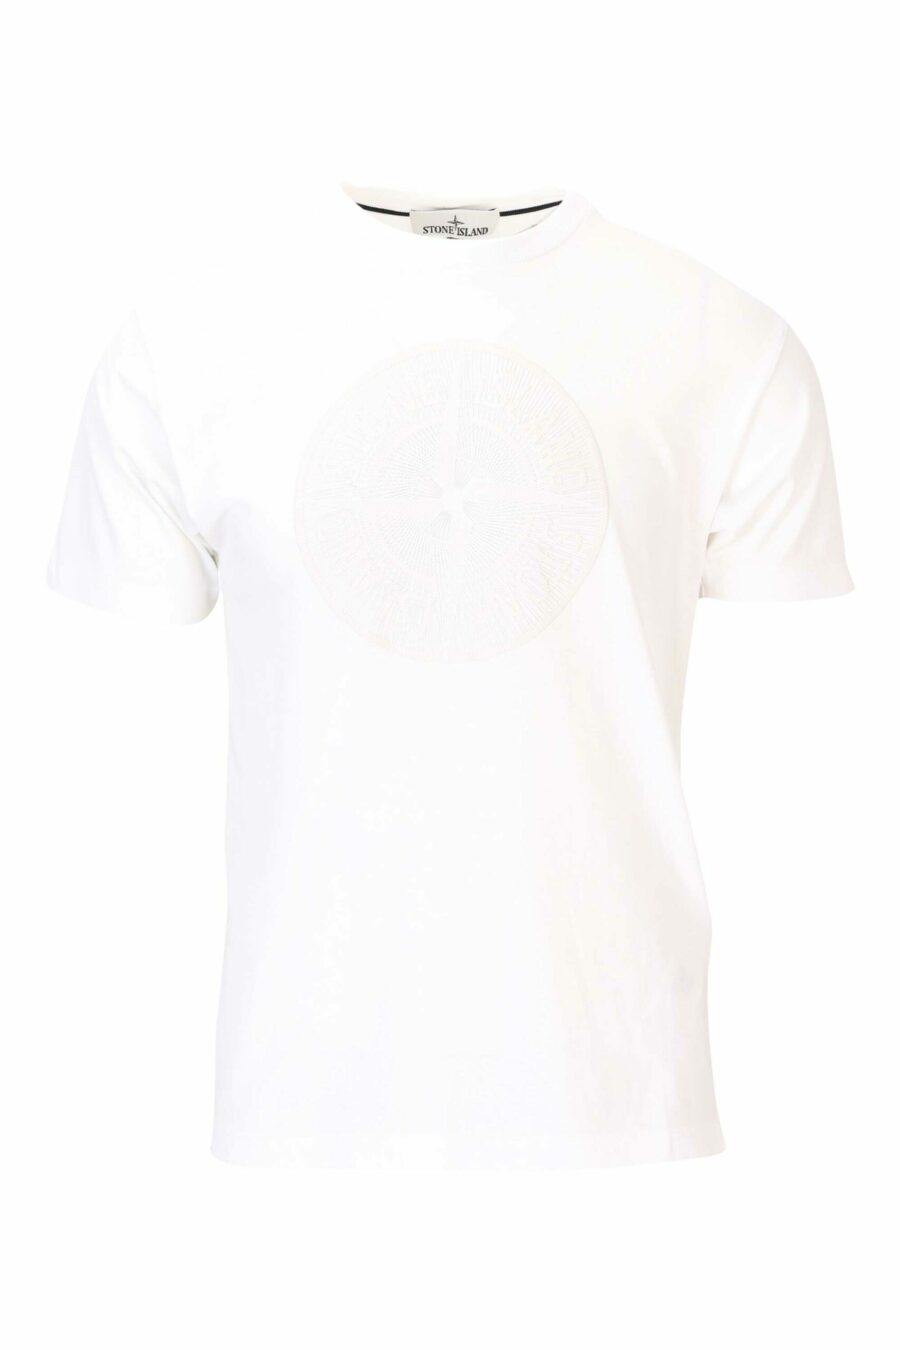 Camiseta blanca con maxilogo circular frontal - 8052572742361 scaled